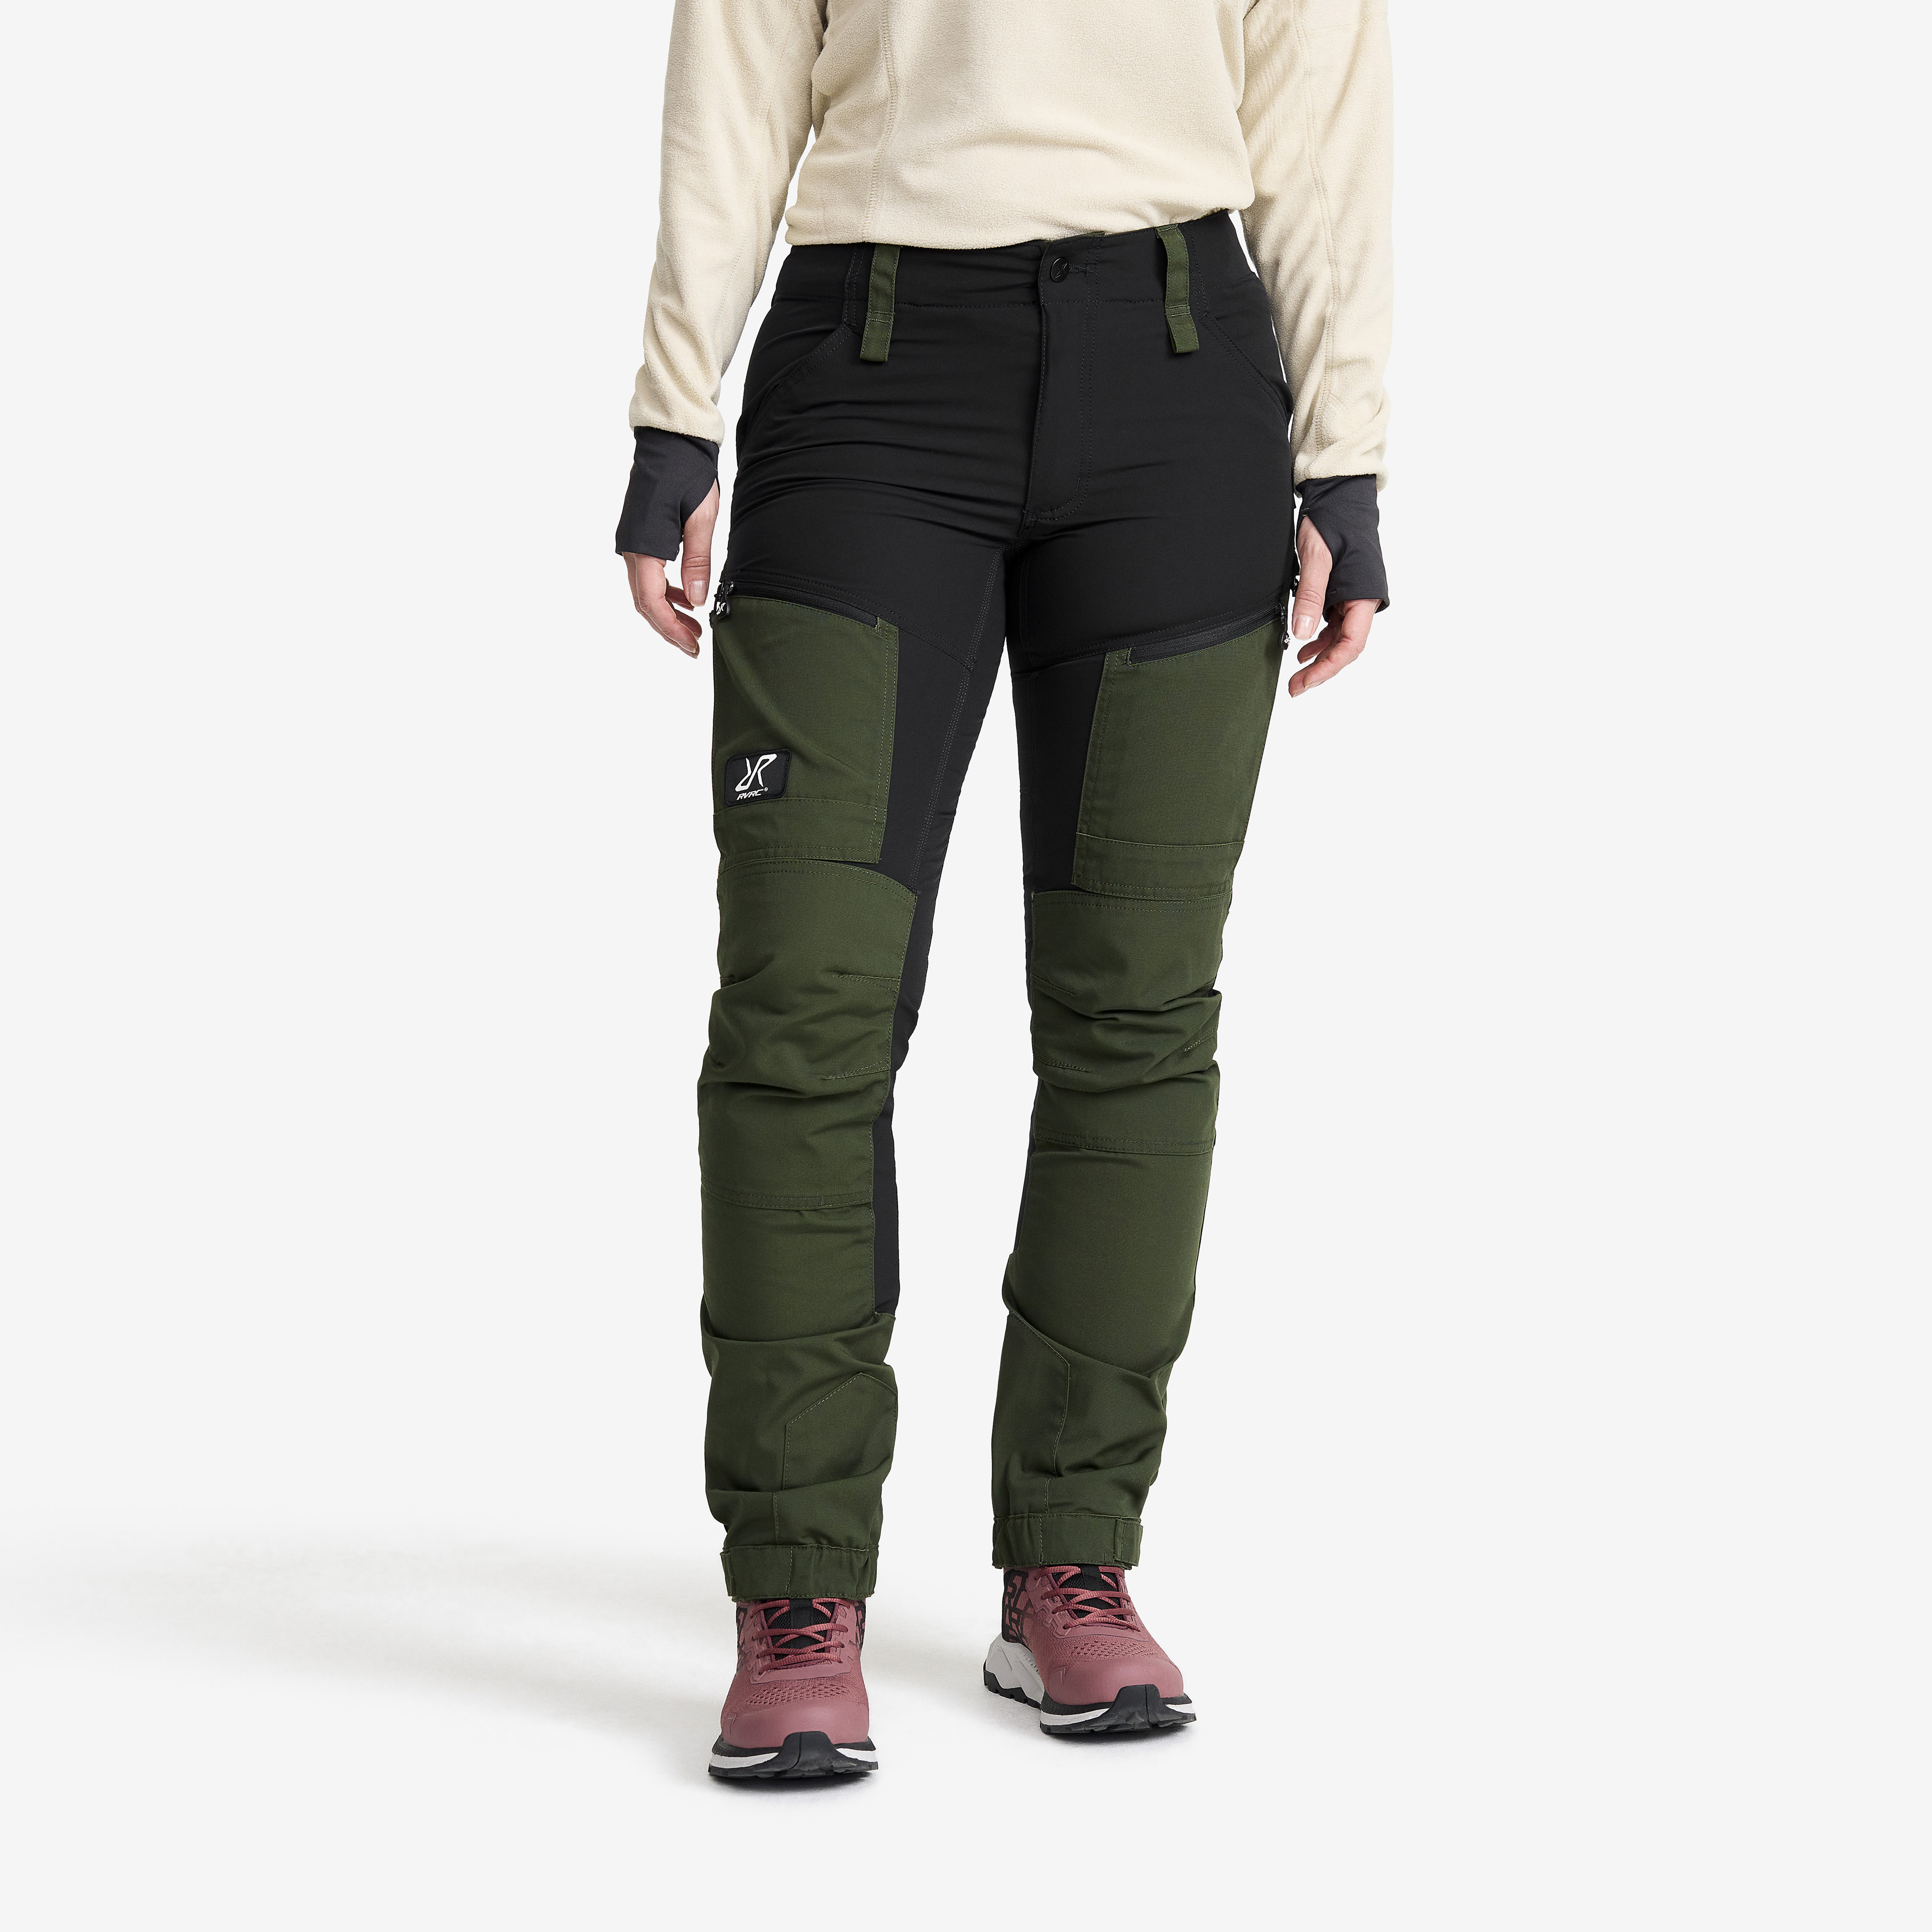 RVRC GP Pro turistické kalhoty pro ženy v zelené barvě